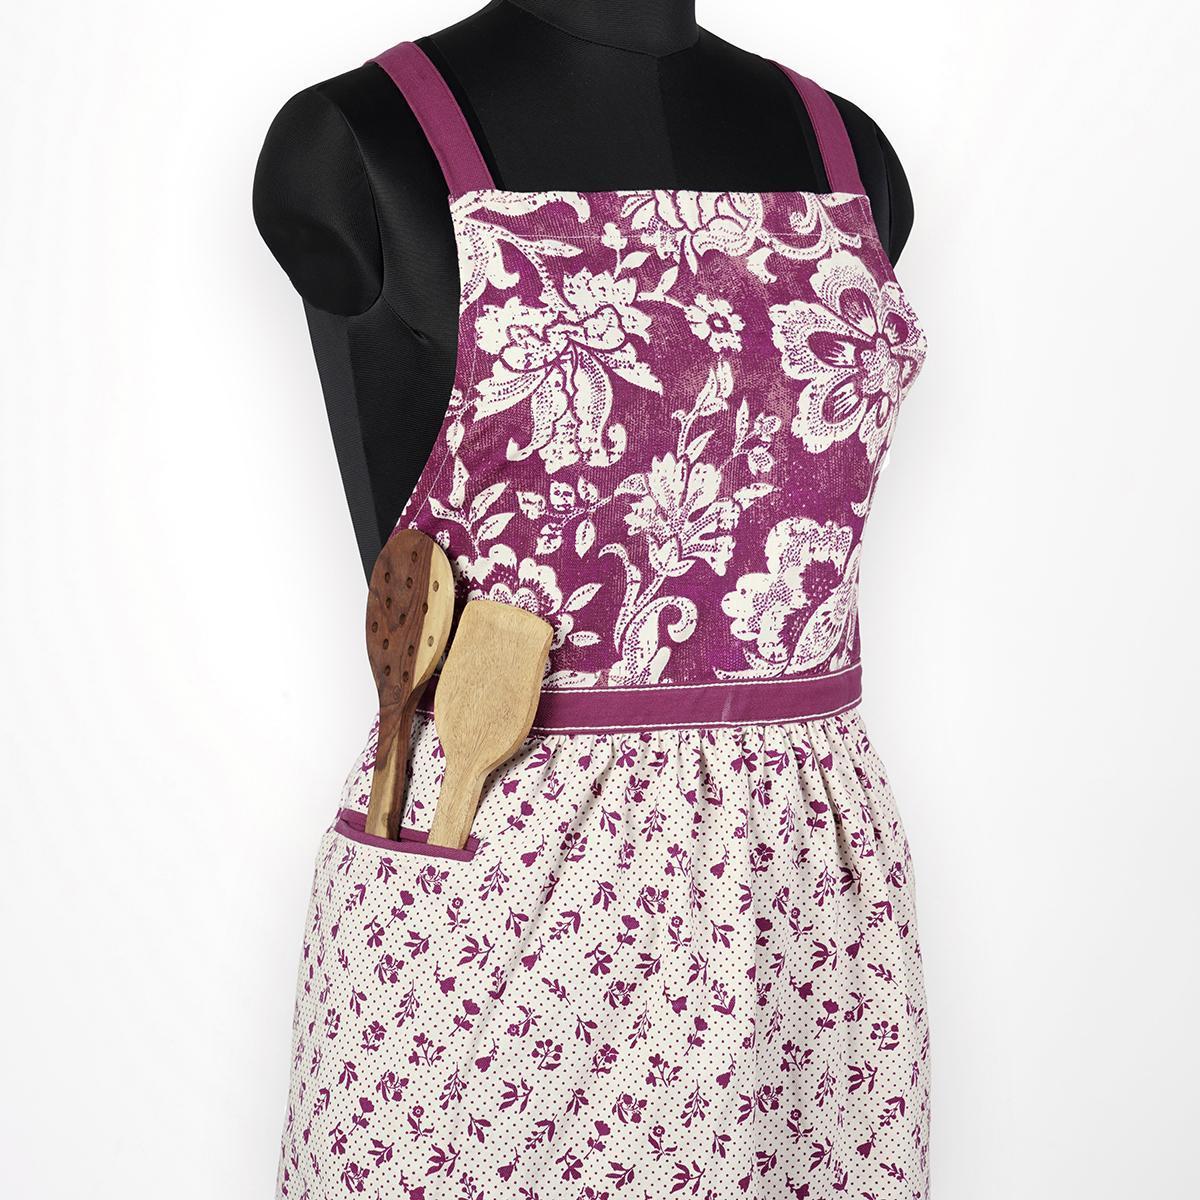 DOMINOTERIE - Plum floral print apron, kitchen accessory, 100% cotton, size 27"X 35"